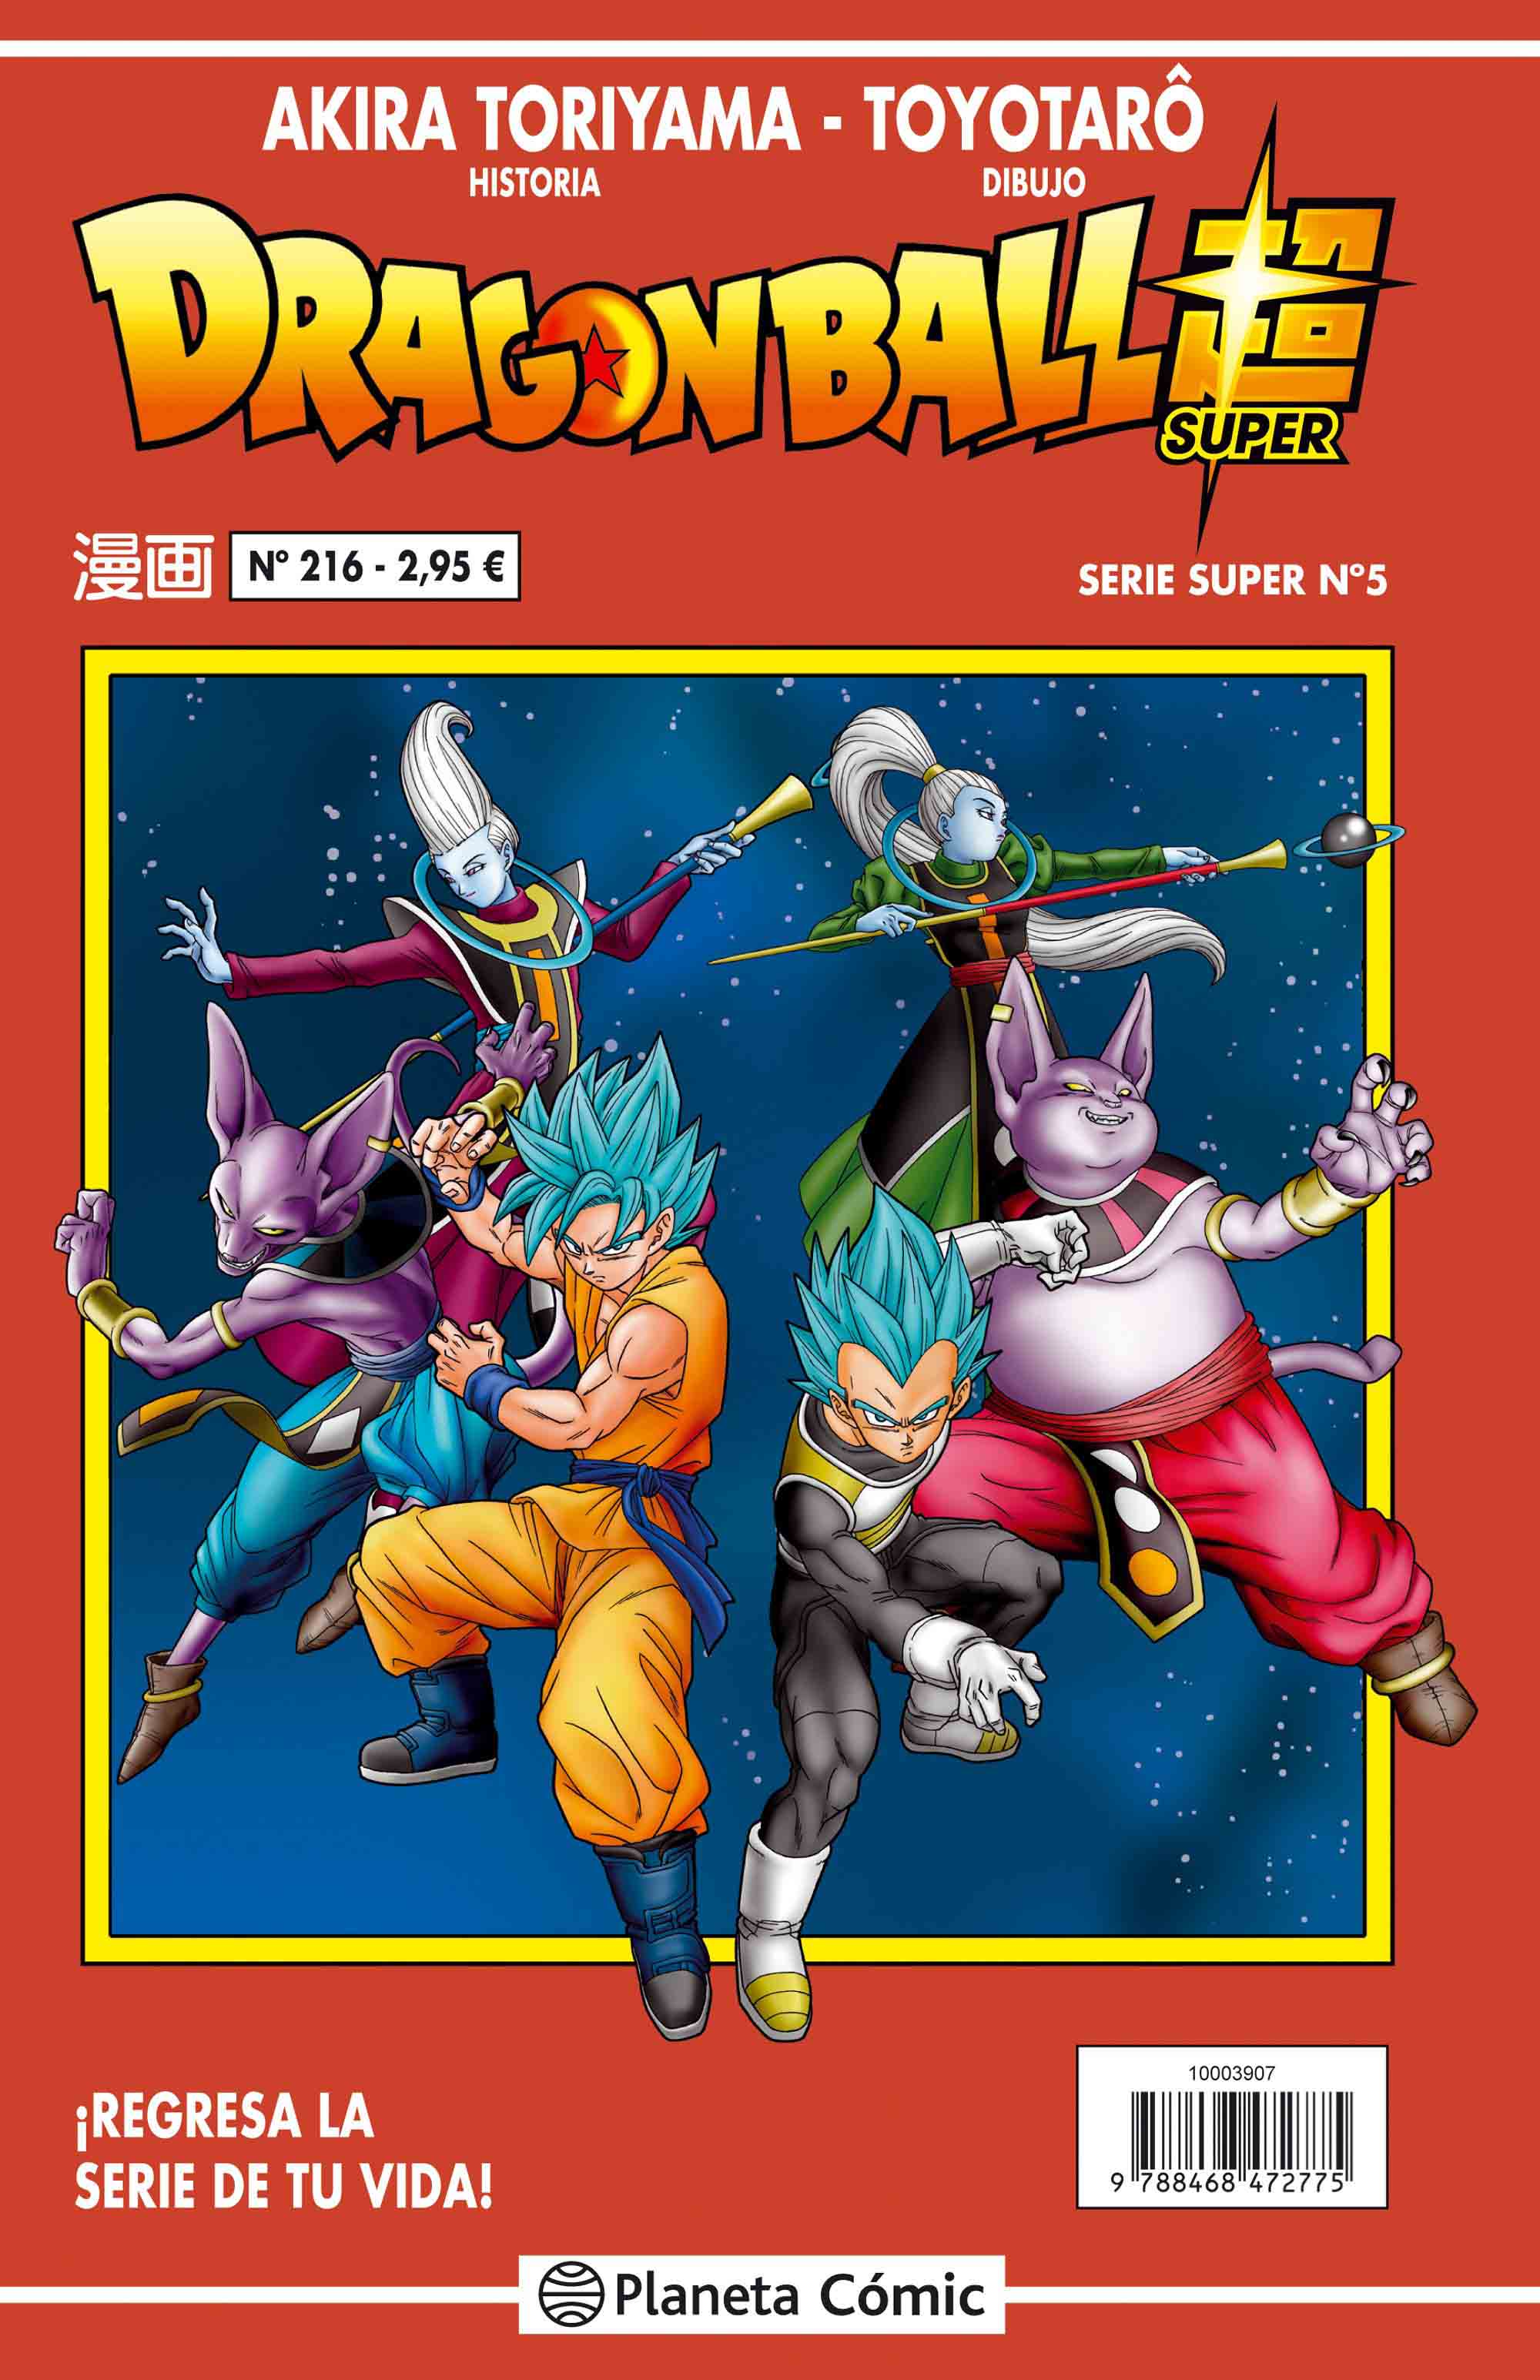 Reseña: ‘Dragon Ball Super’ nº 5 / nº 216 Serie Roja